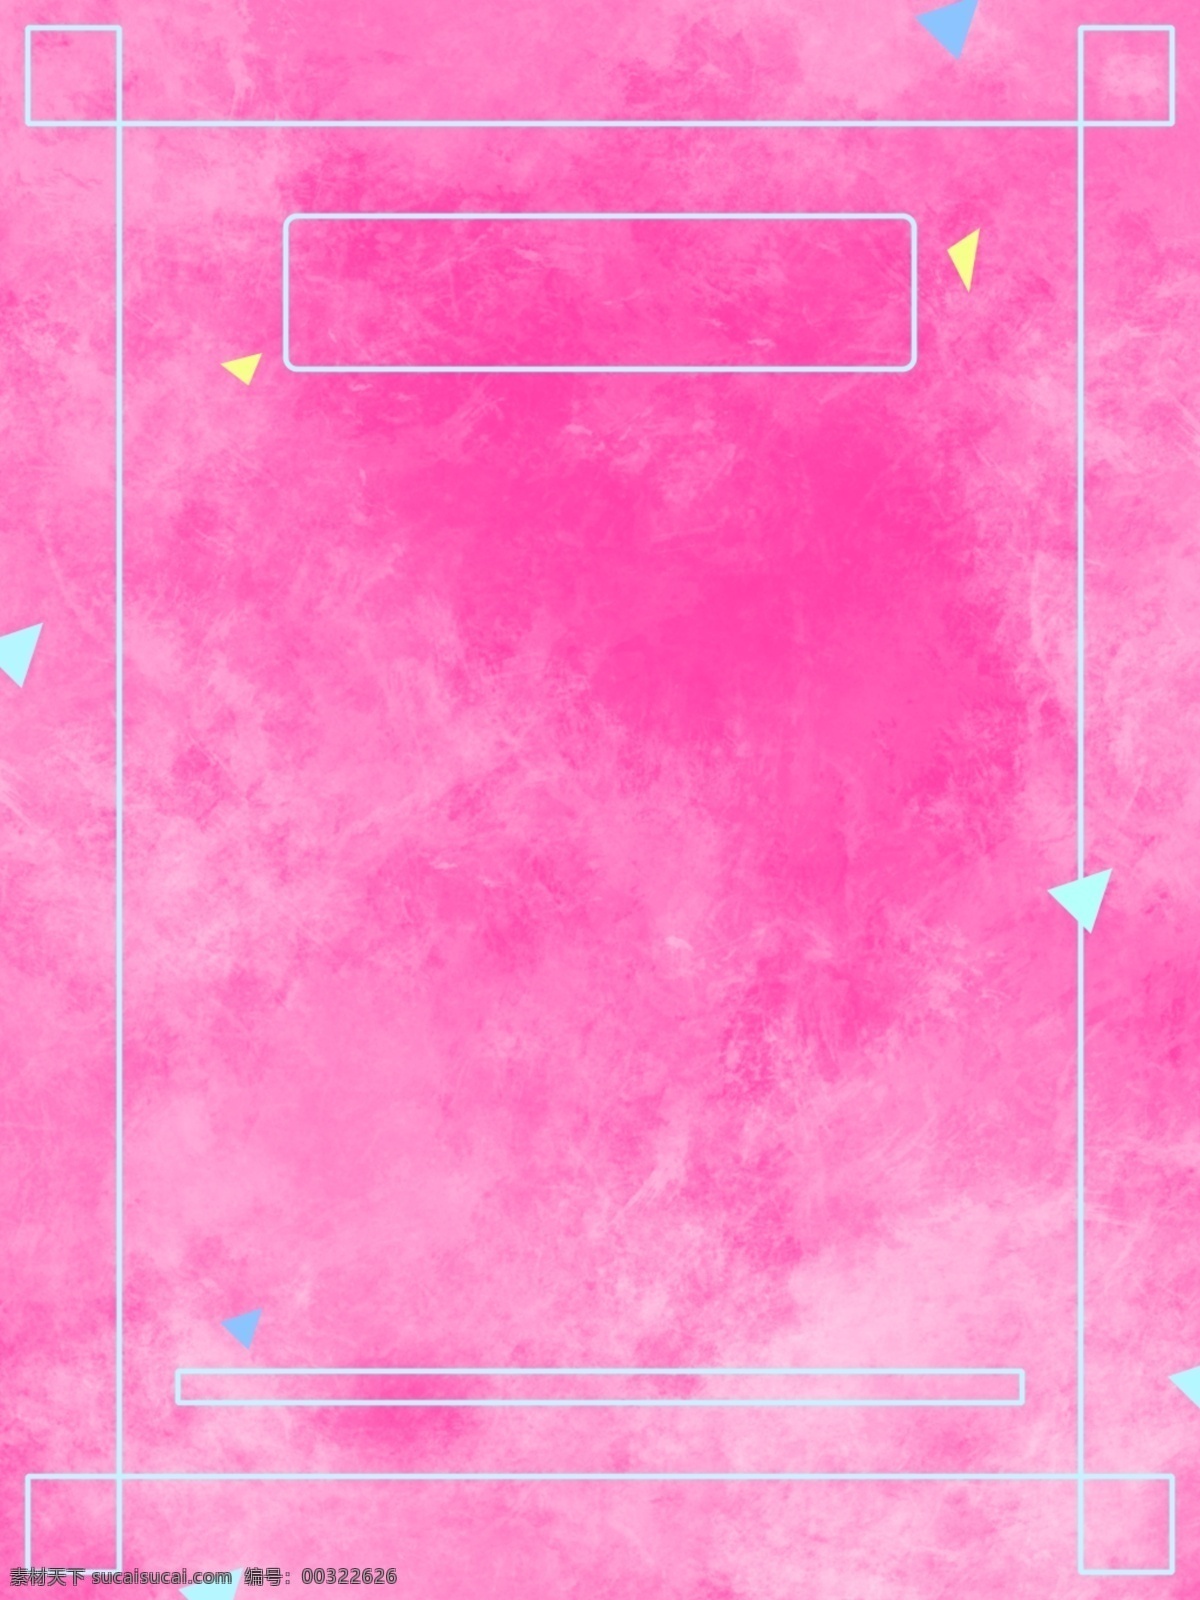 原创 粉红 水彩 纹理 h5 背景 粉红色 线框 小清新 三角形 水粉纹理 粉红水彩纹理 水彩印迹